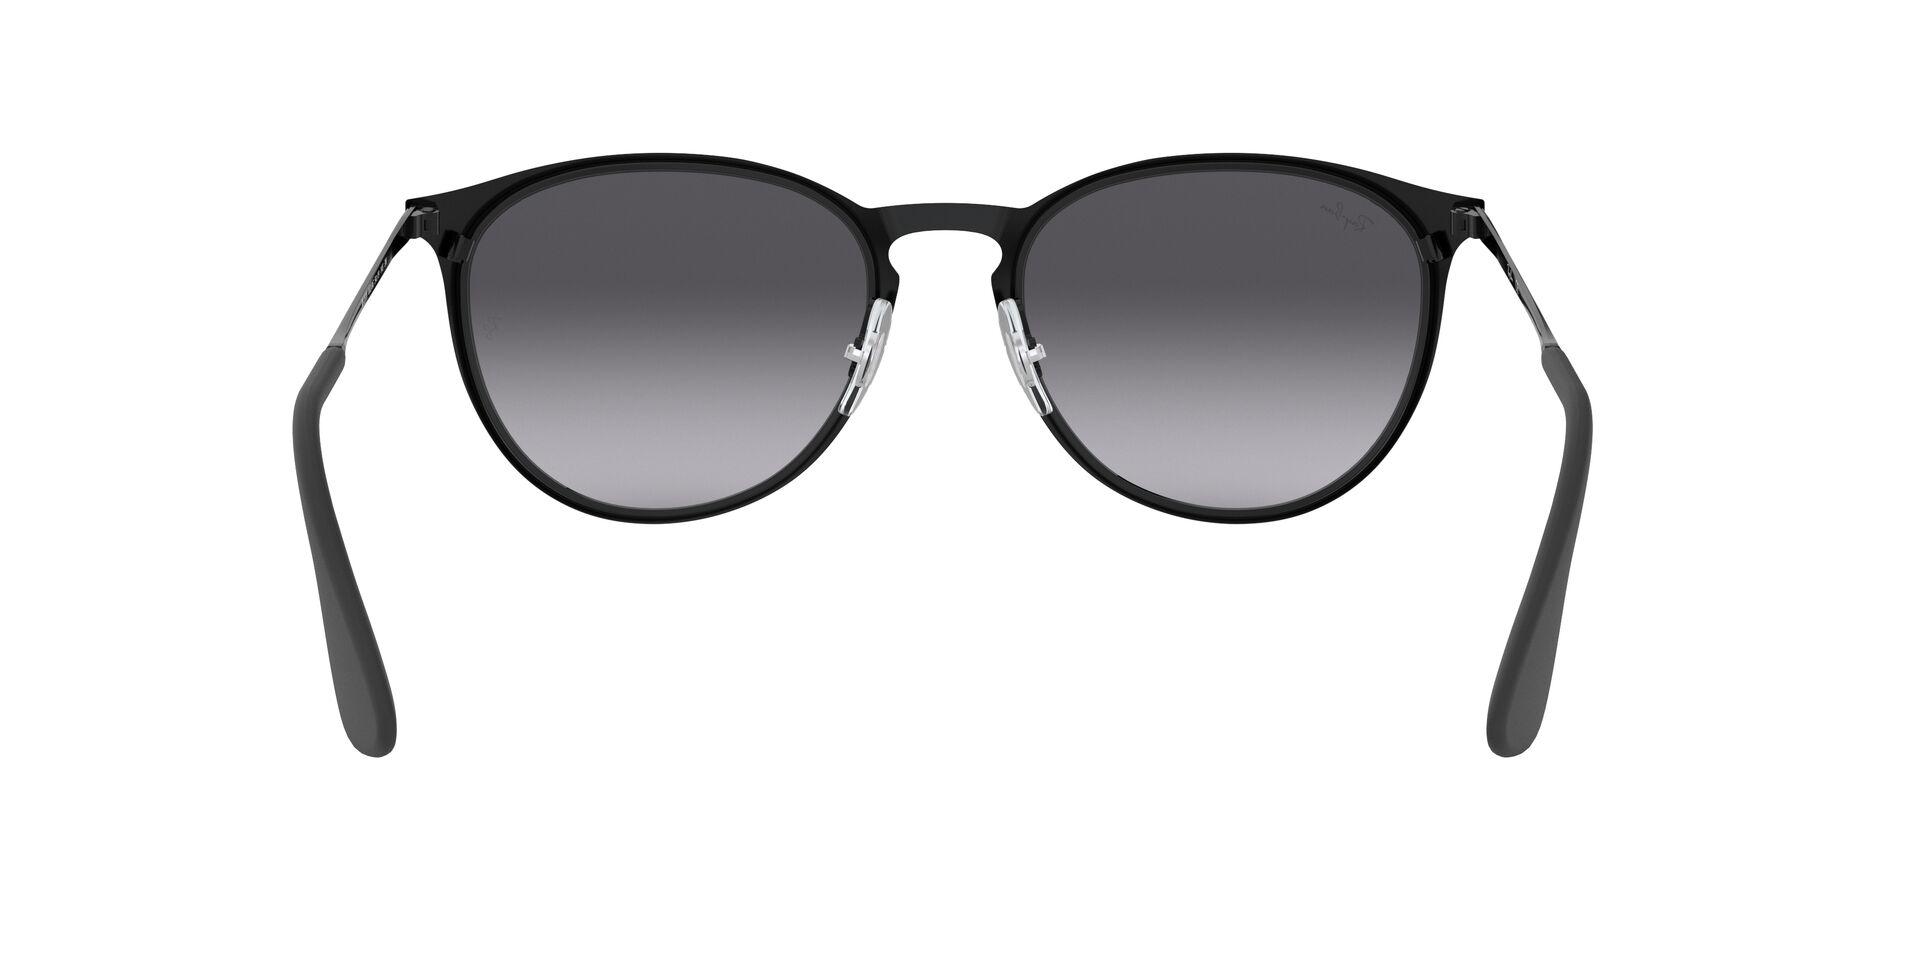 Mắt Kính Ray-Ban Erika Metal - RB3539 002/8G -Sunglasses